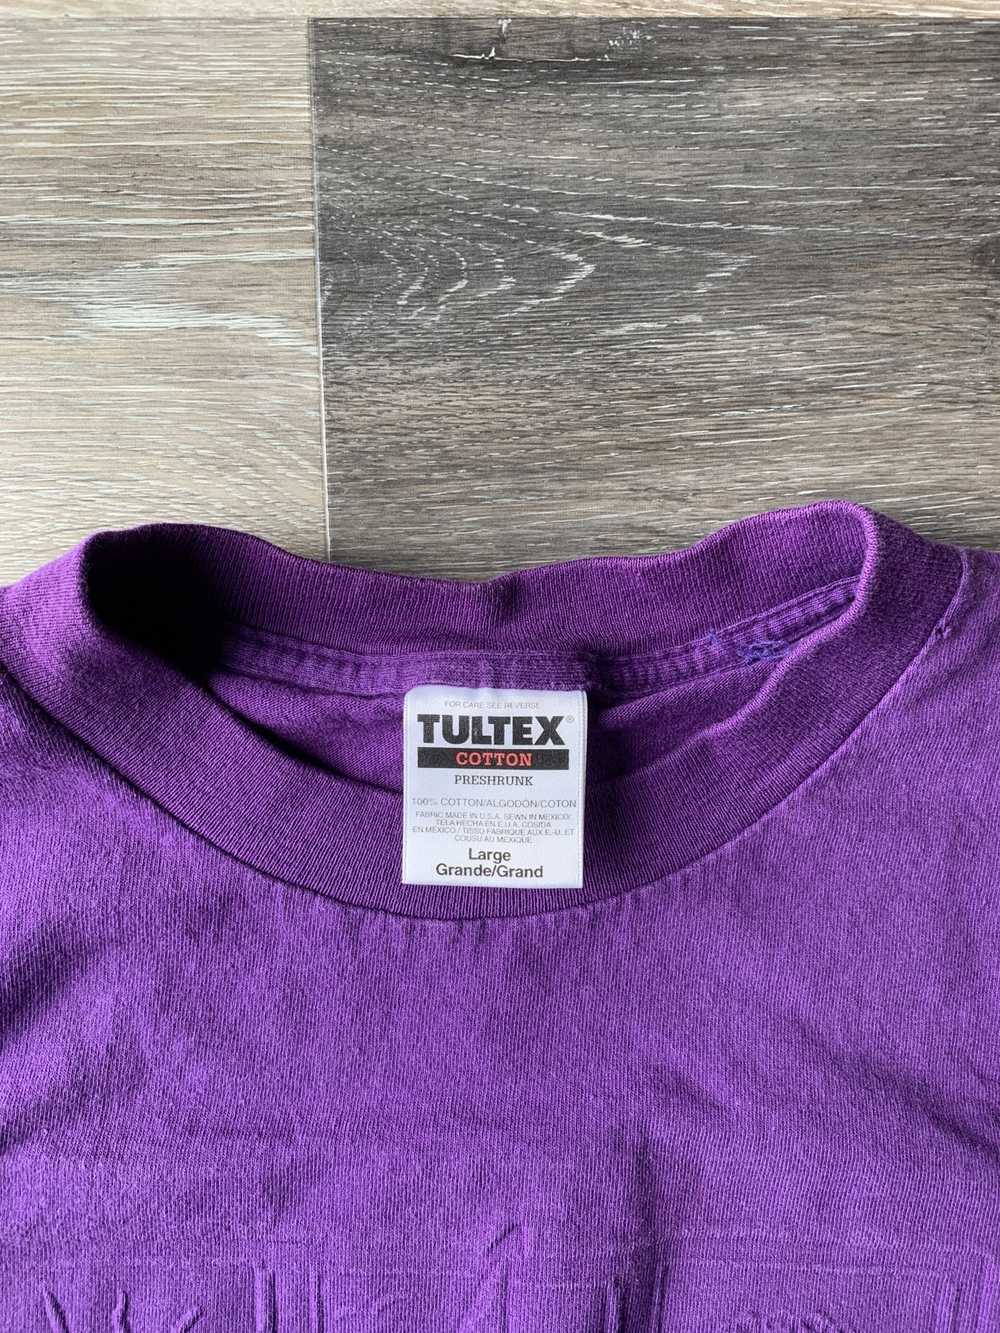 Tultex Tultex Hilton Head Vintage Shirt - image 3